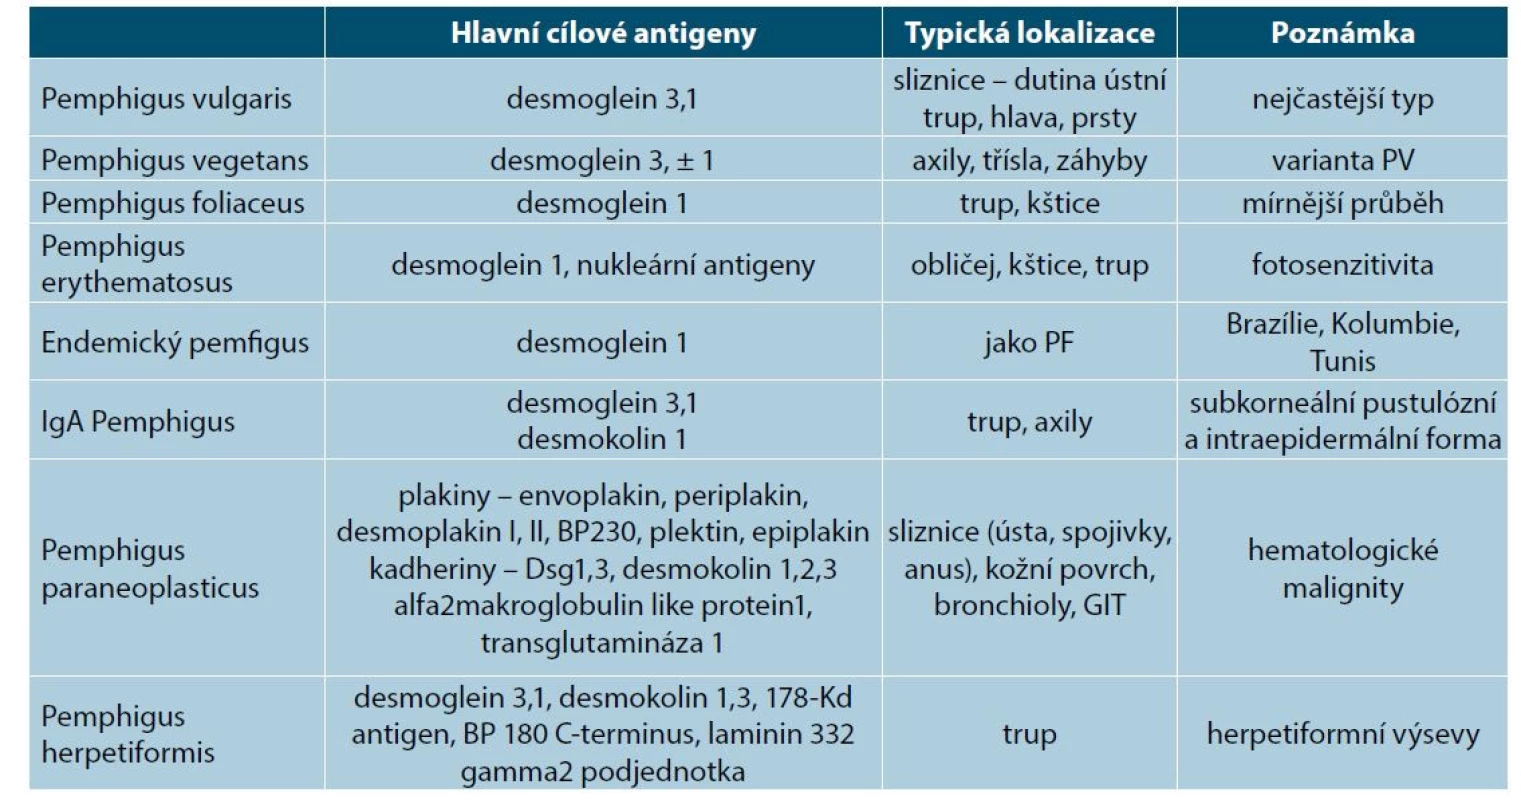 Subtypy pemfigu a jejich cílové antigeny